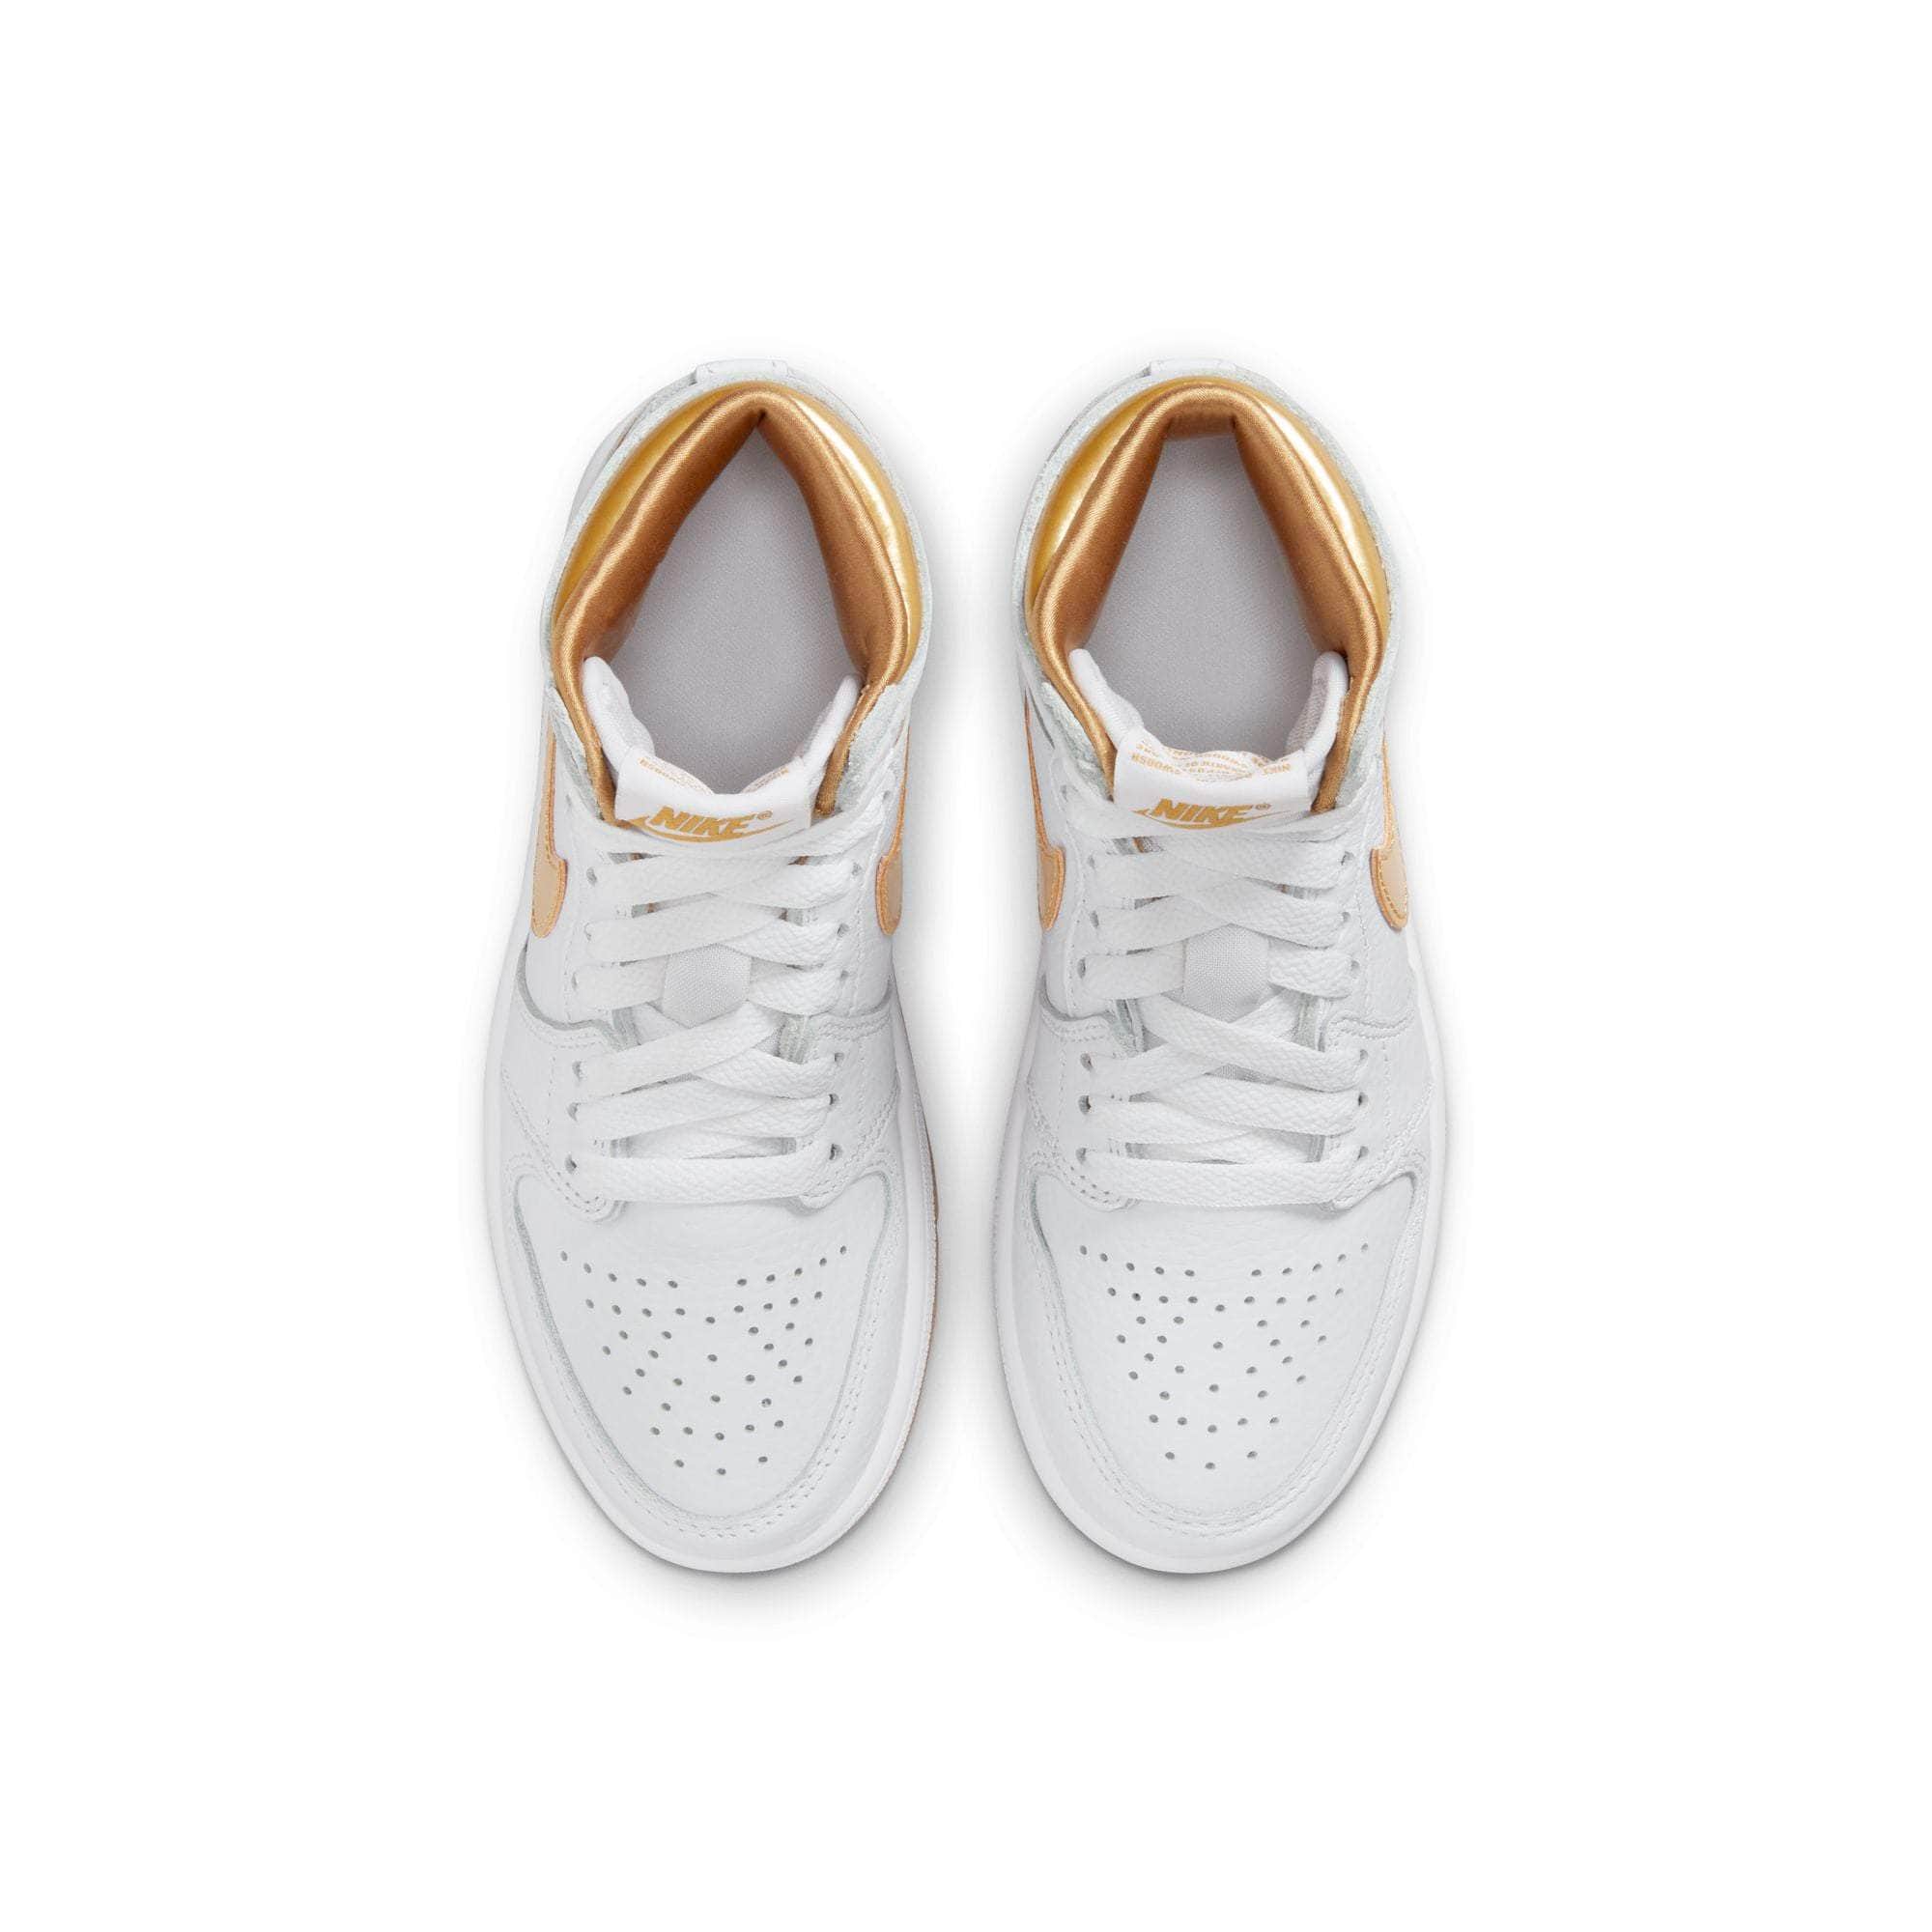 Air Jordan Footwear Air Jordan 1 High OG “Metallic Gold” - Kid's PS